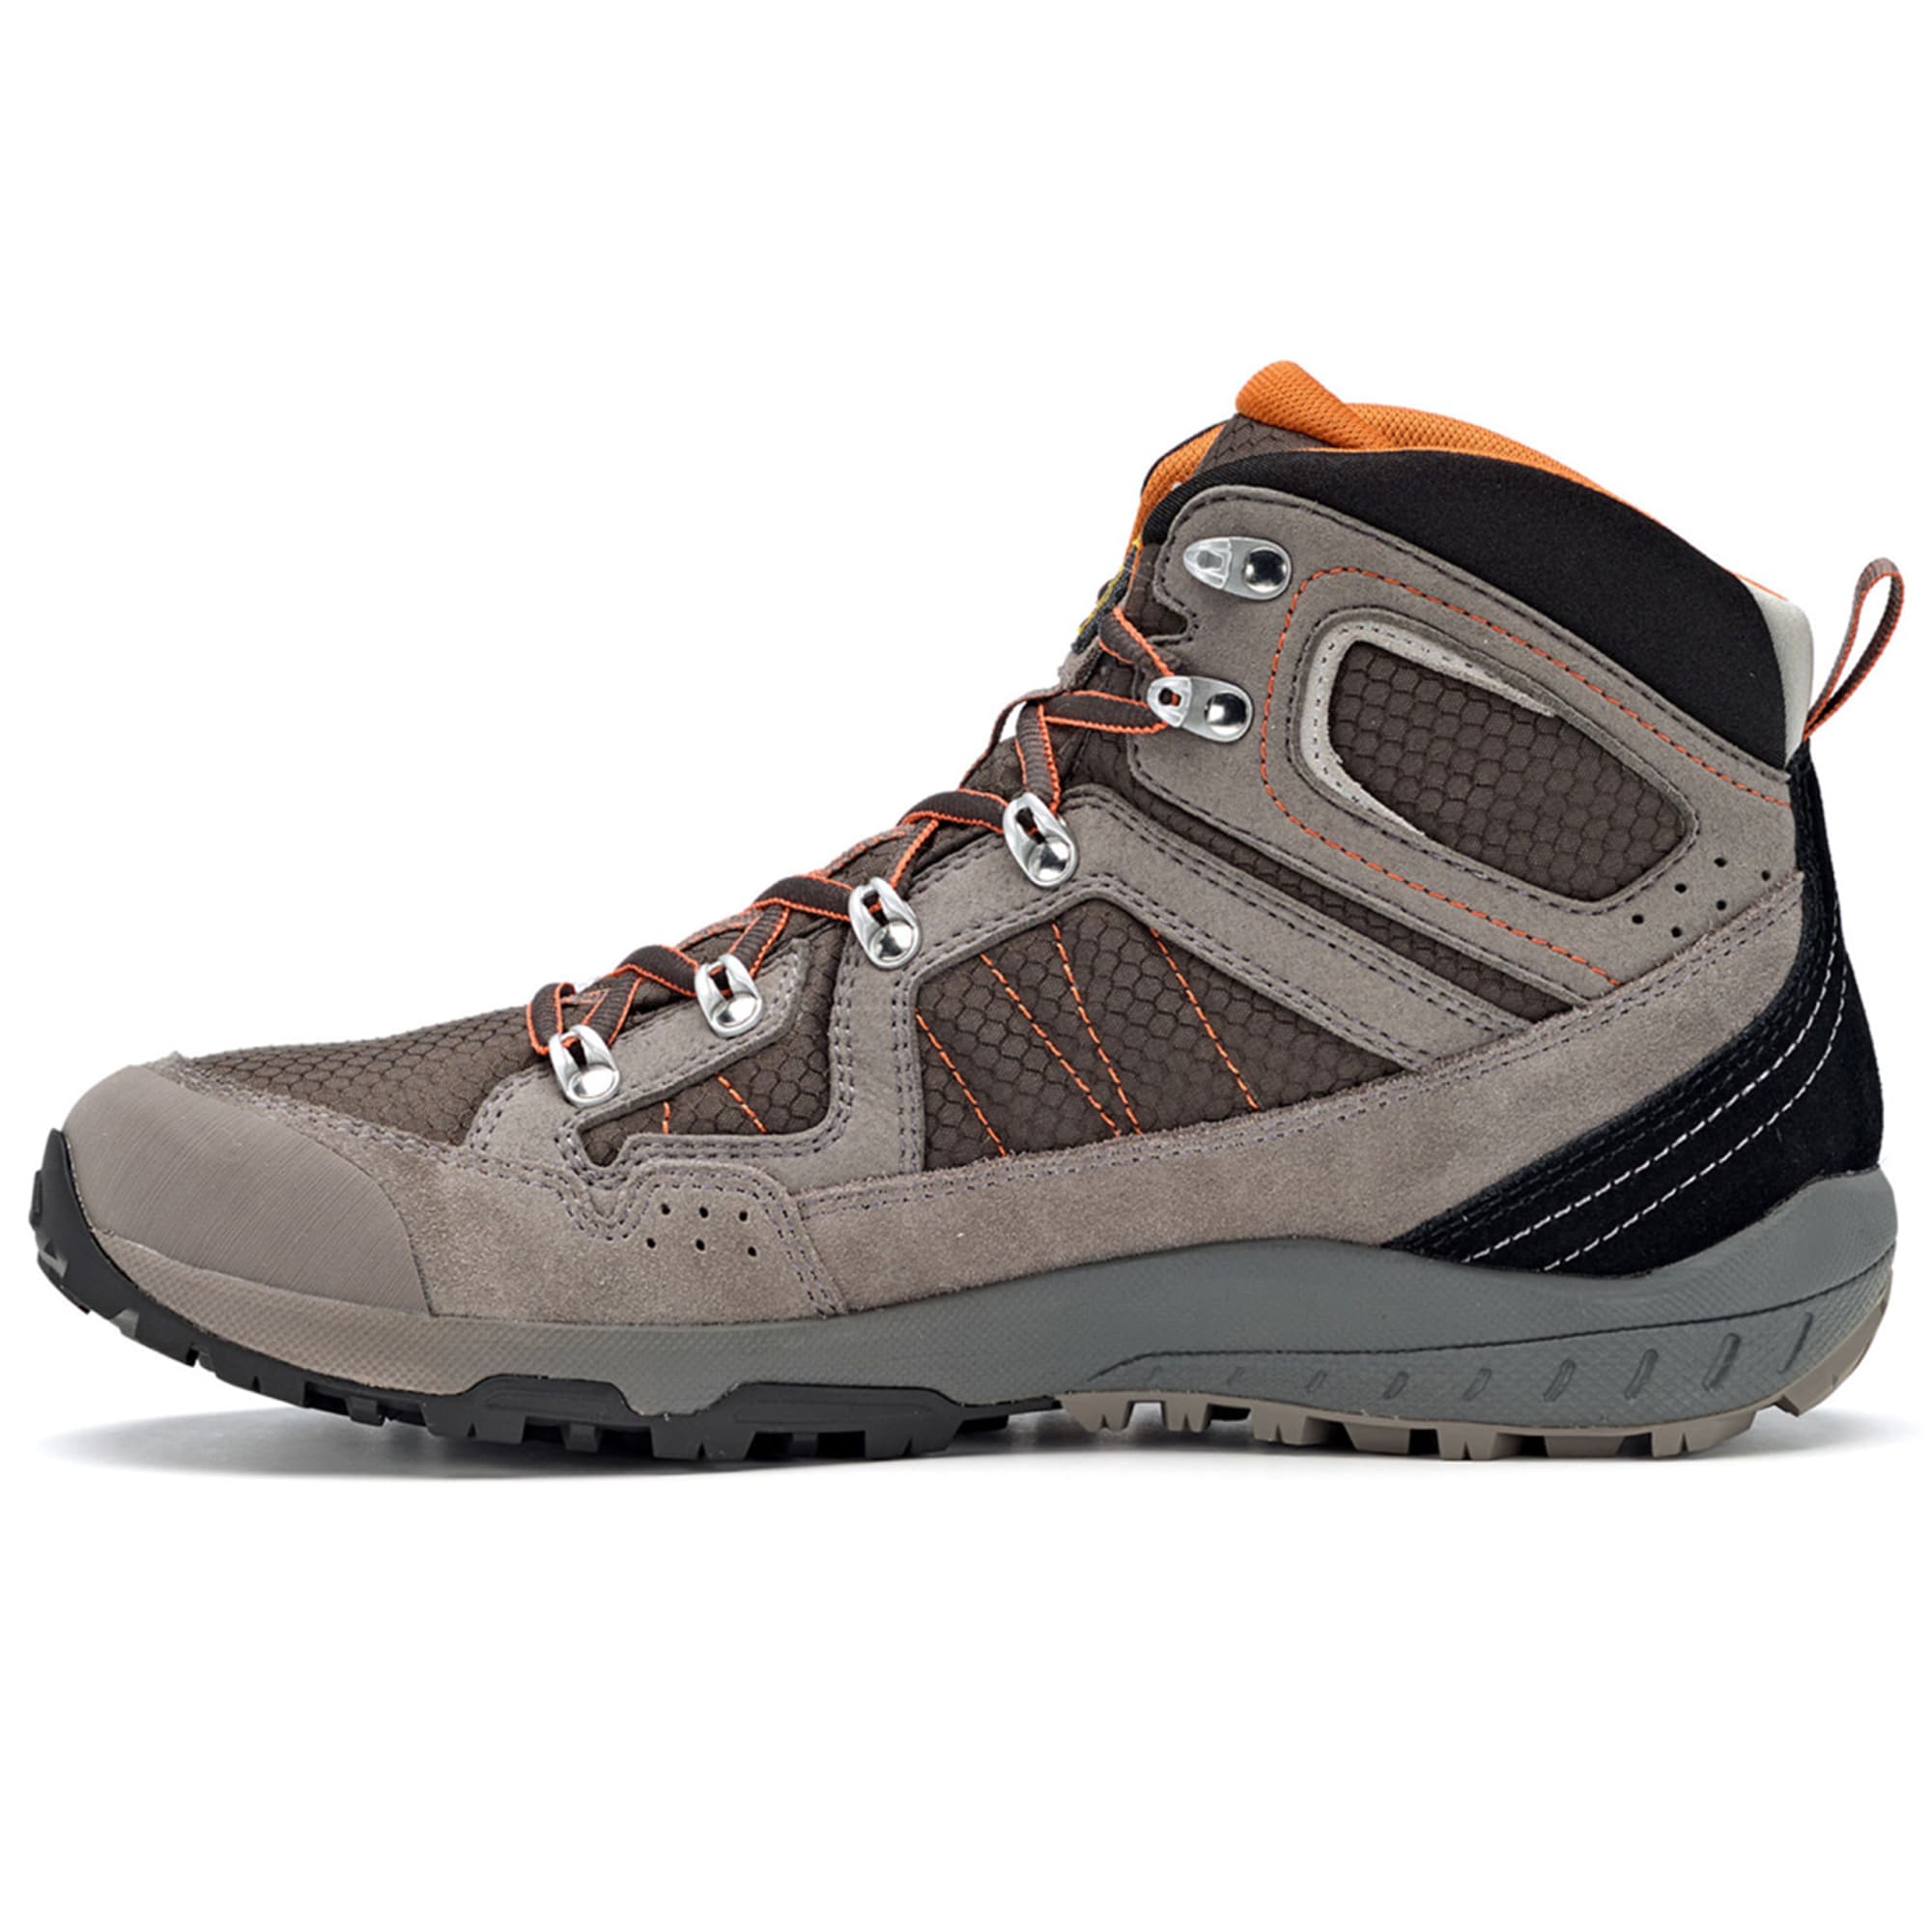 ASOLO Men's Landscape GV Waterproof Mid Hiking Boots - Eastern